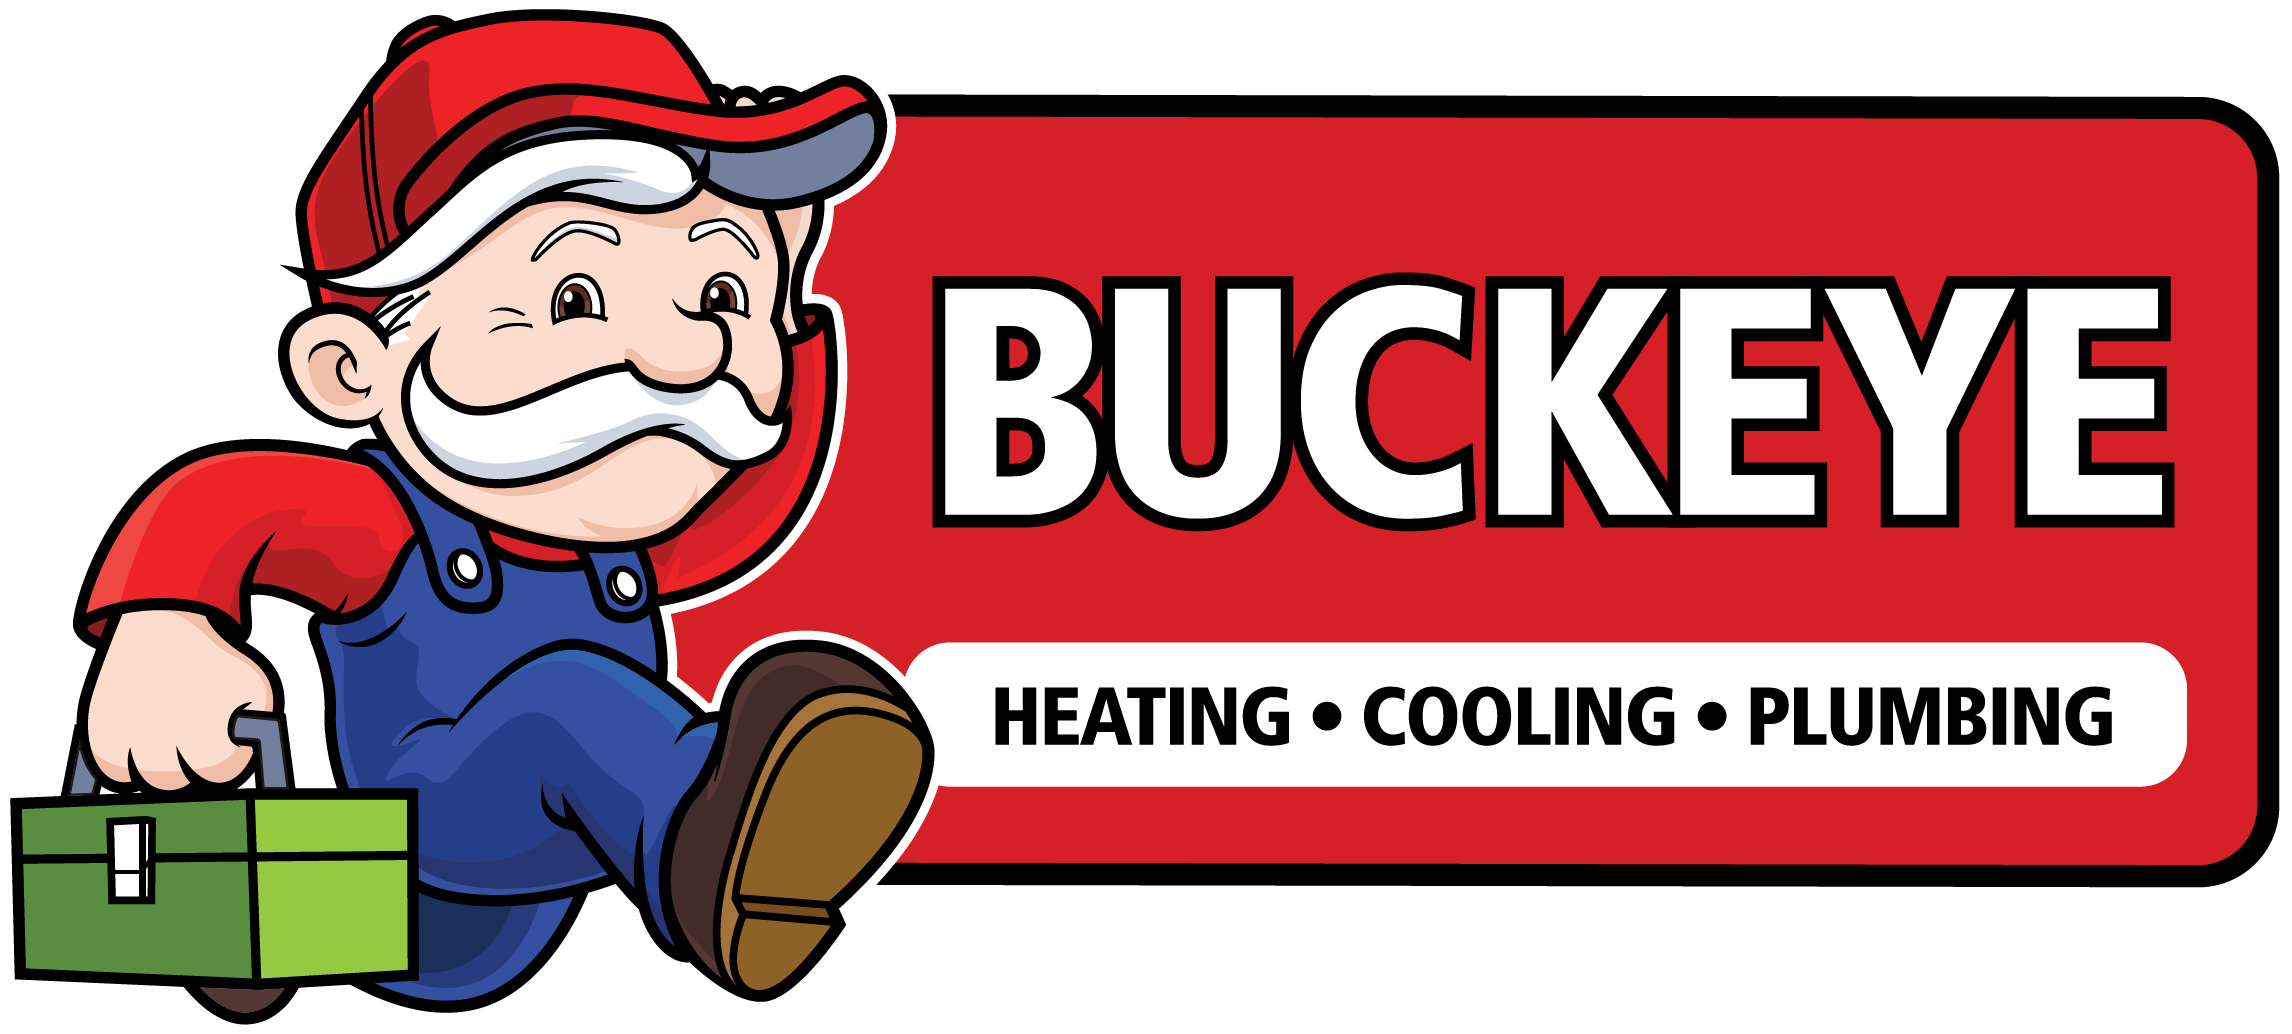 Buckeye Heating, Cooling & Plumbing Logo